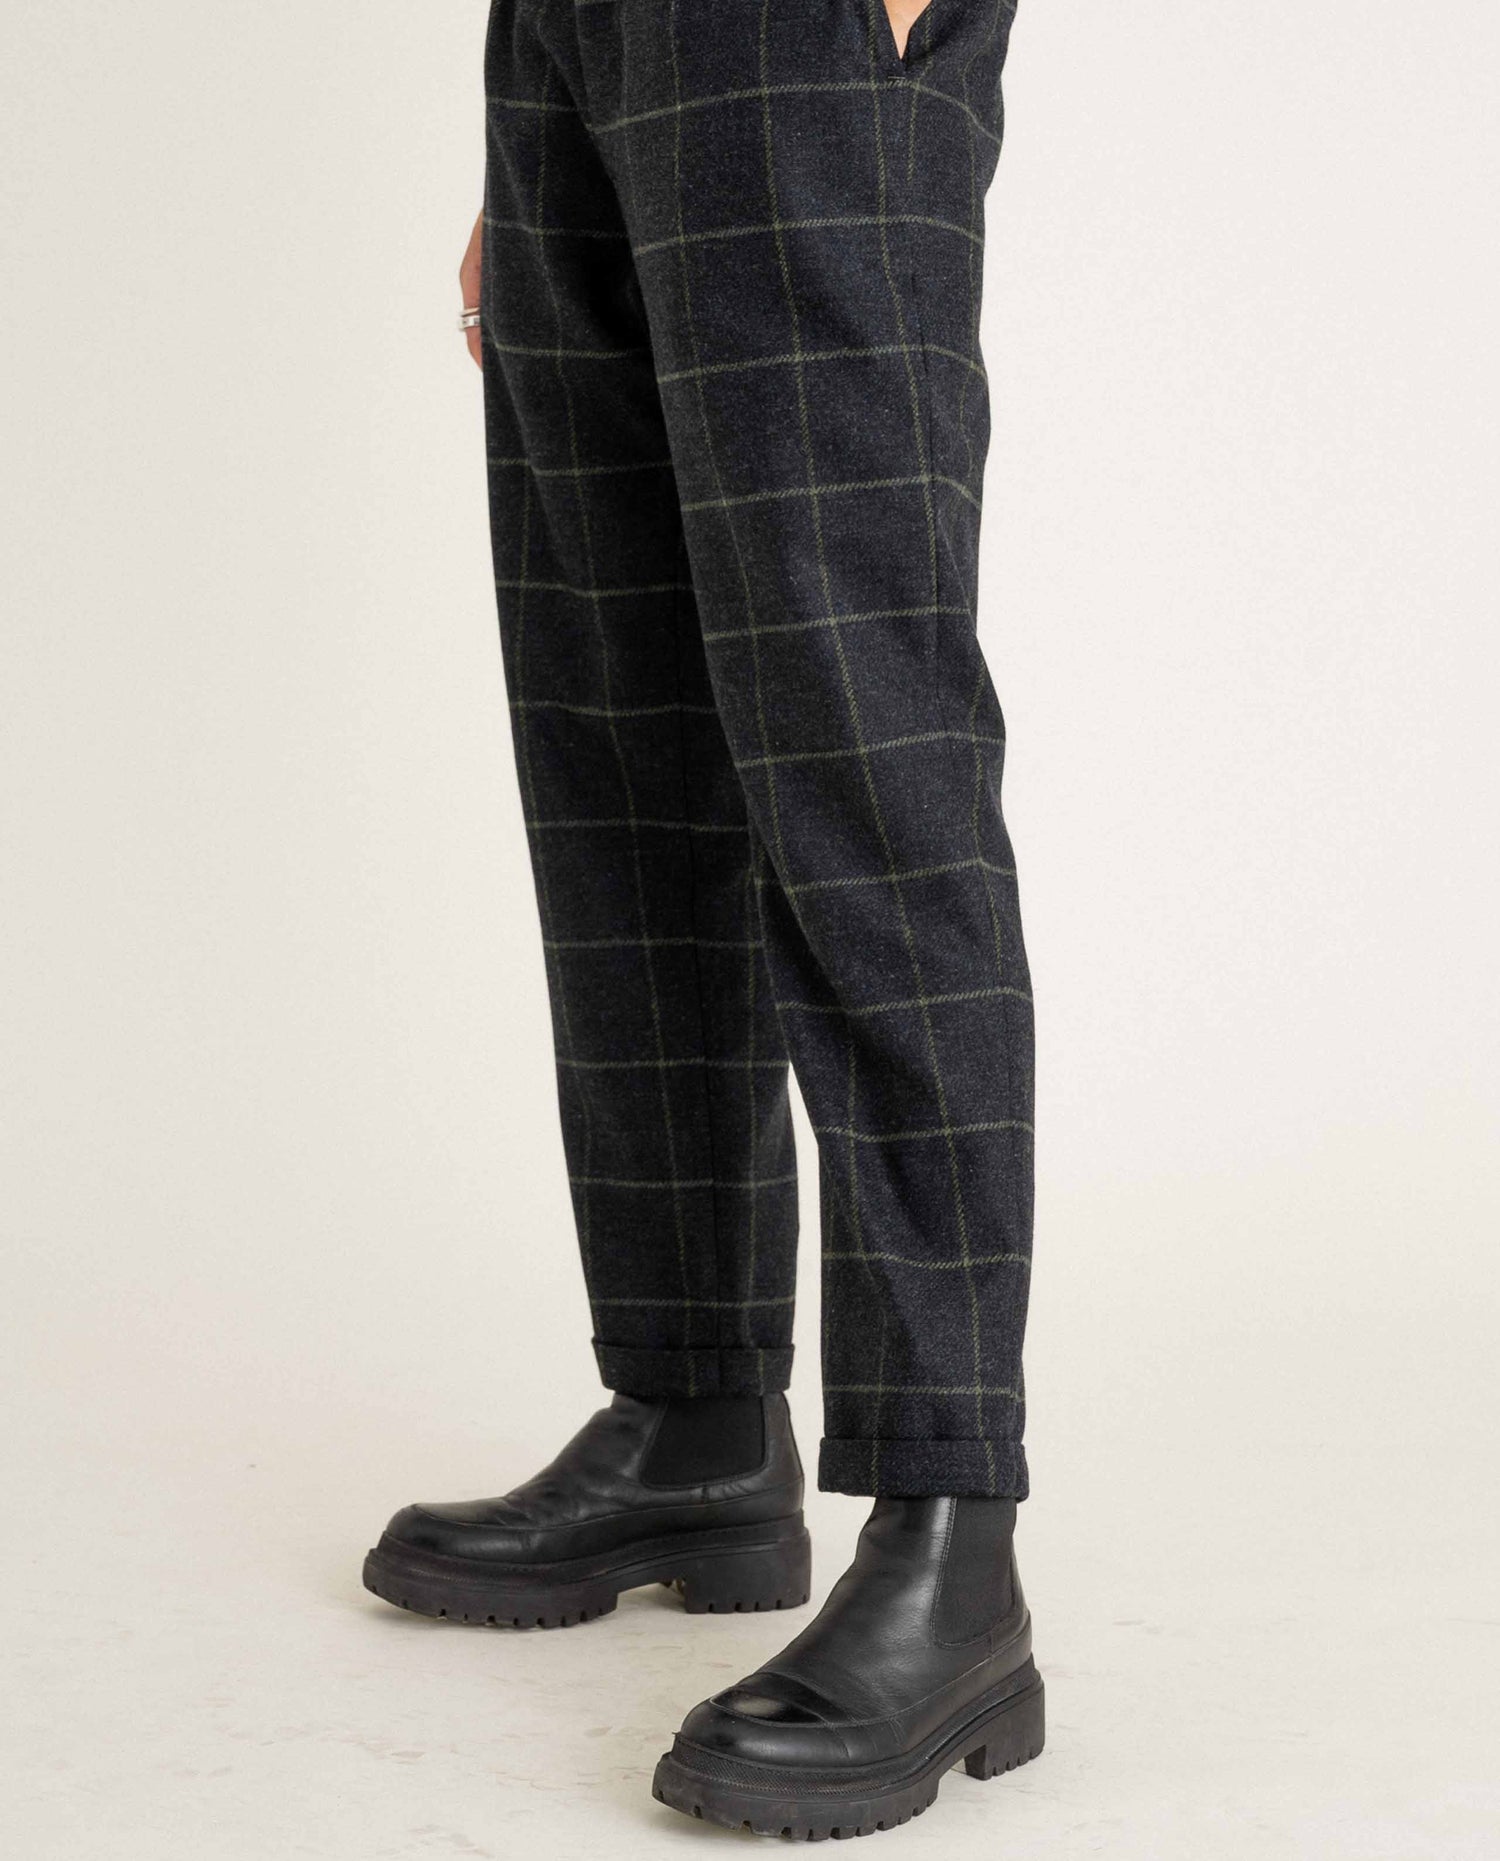 marché commun noyoco pantalon sienna laine vierge carreaux éco-responsable